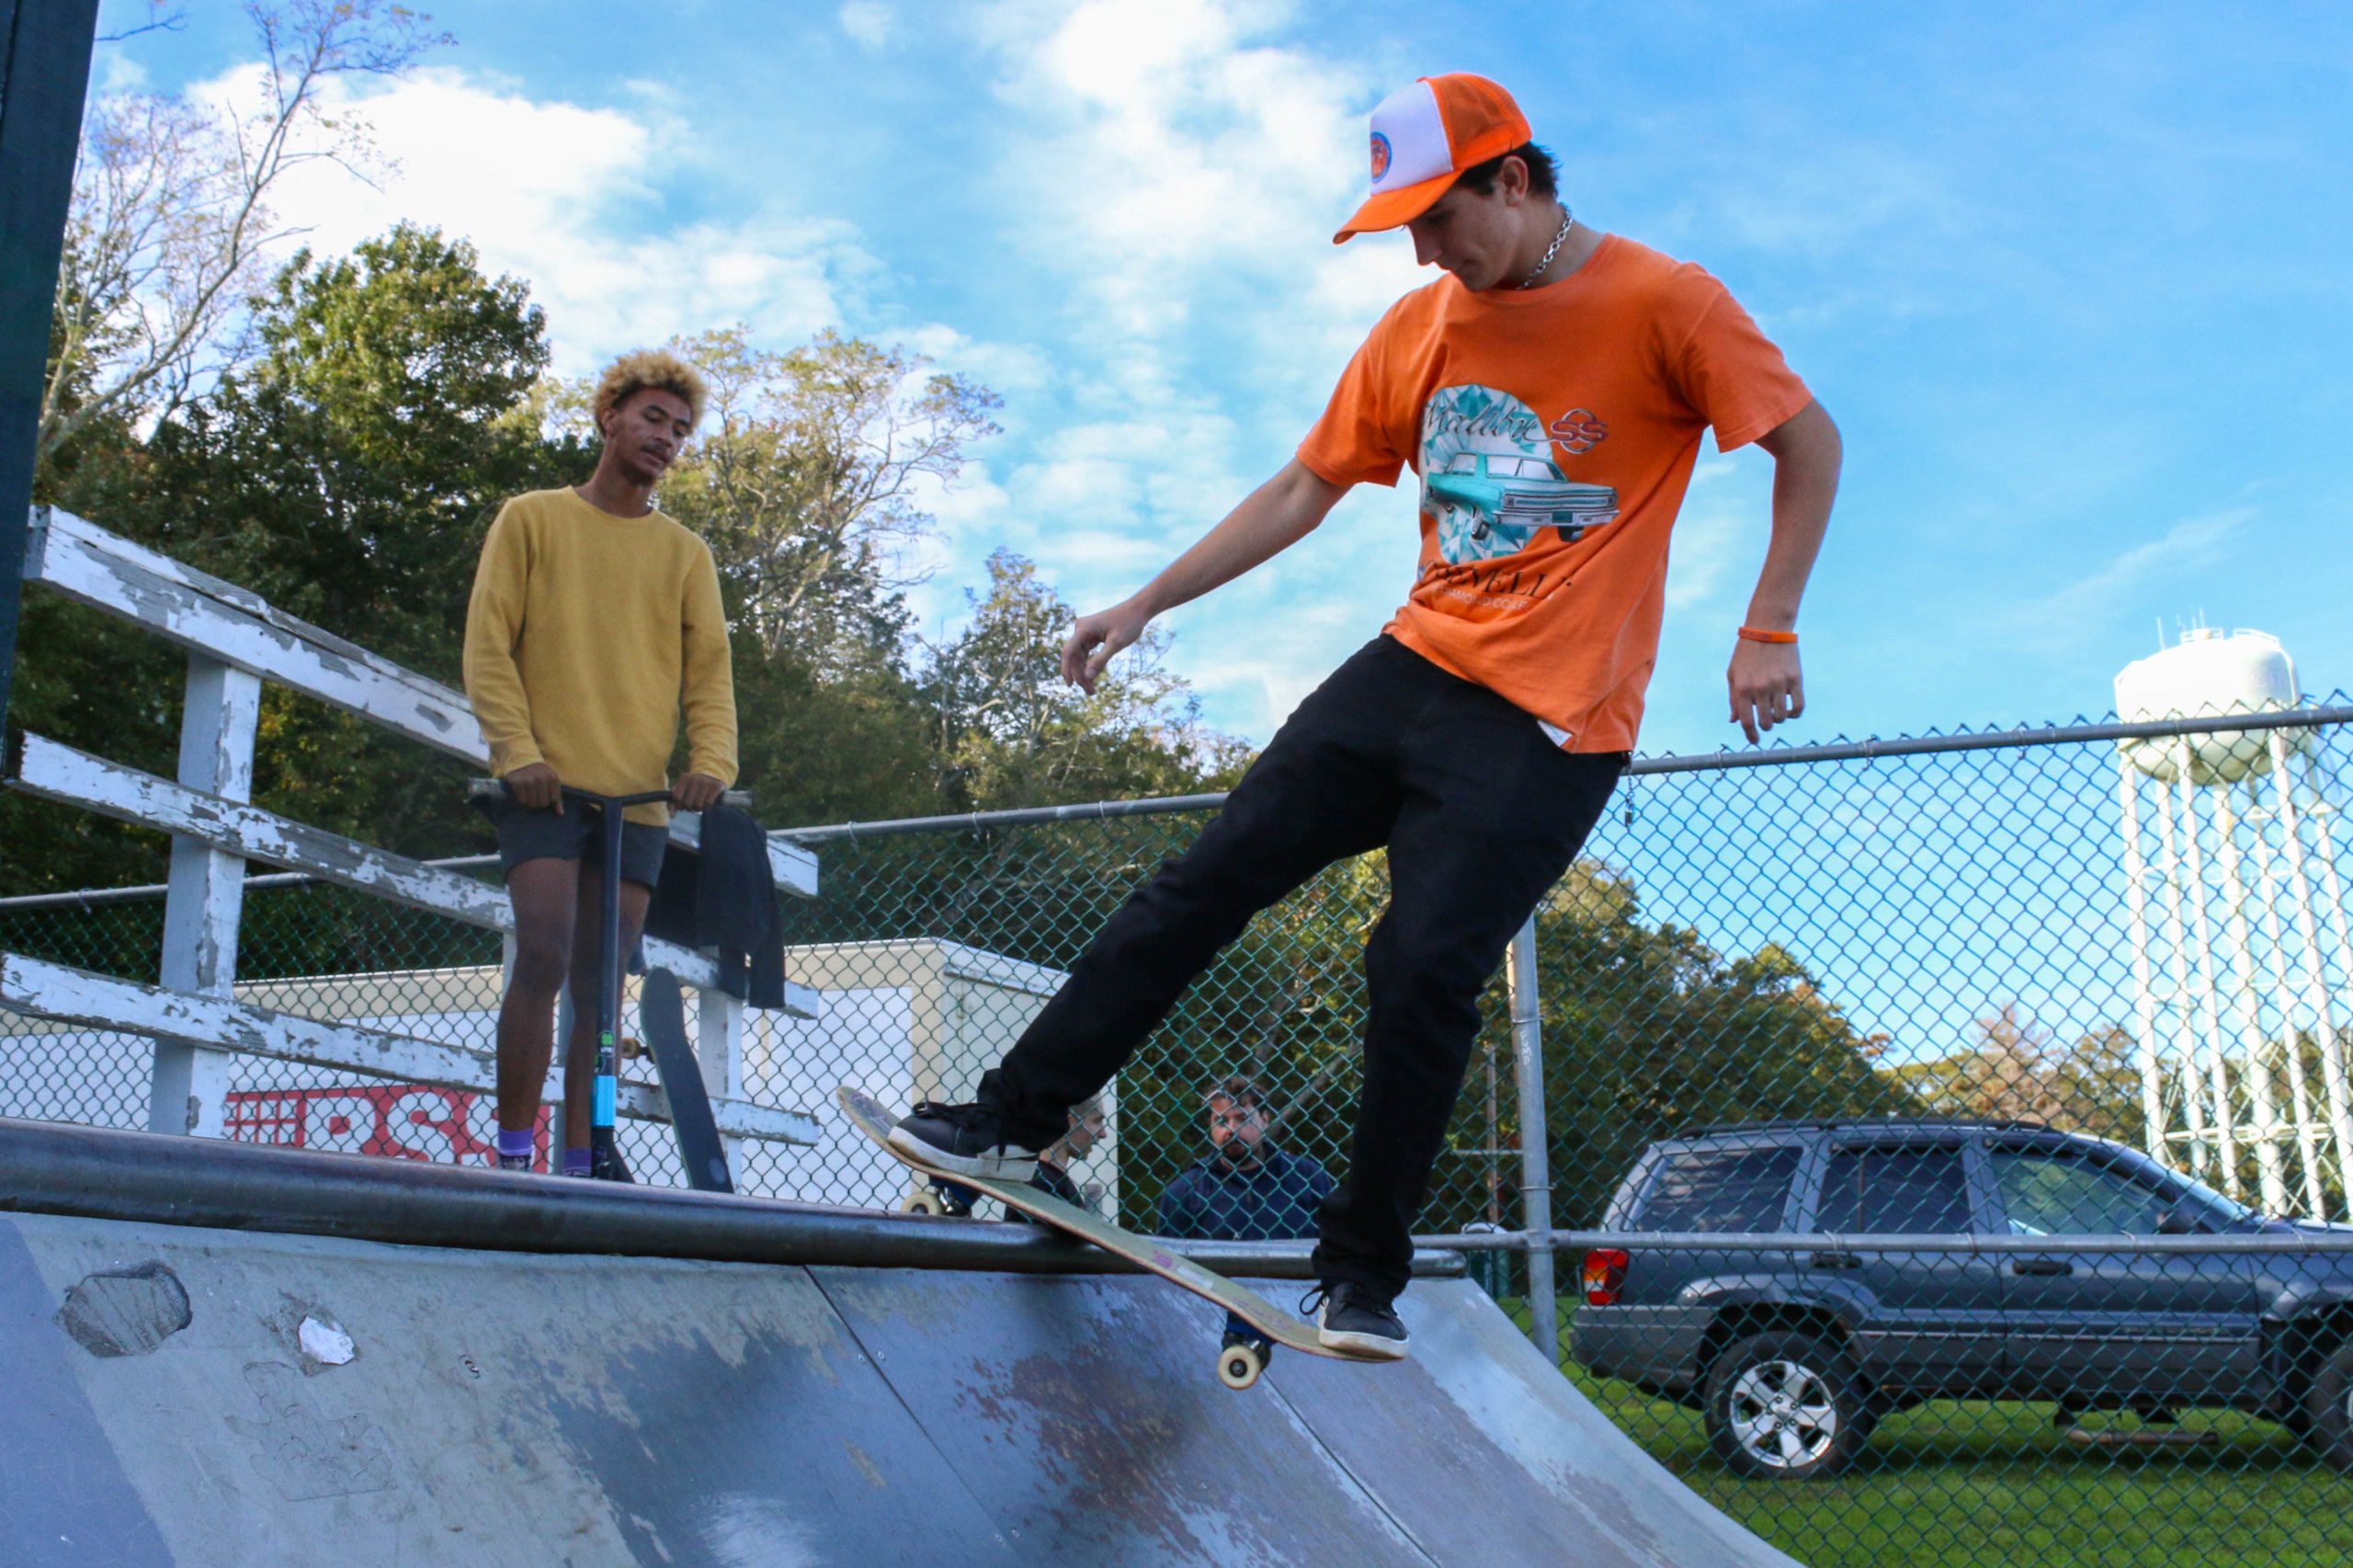 Skate Ramps in Skateboarding 